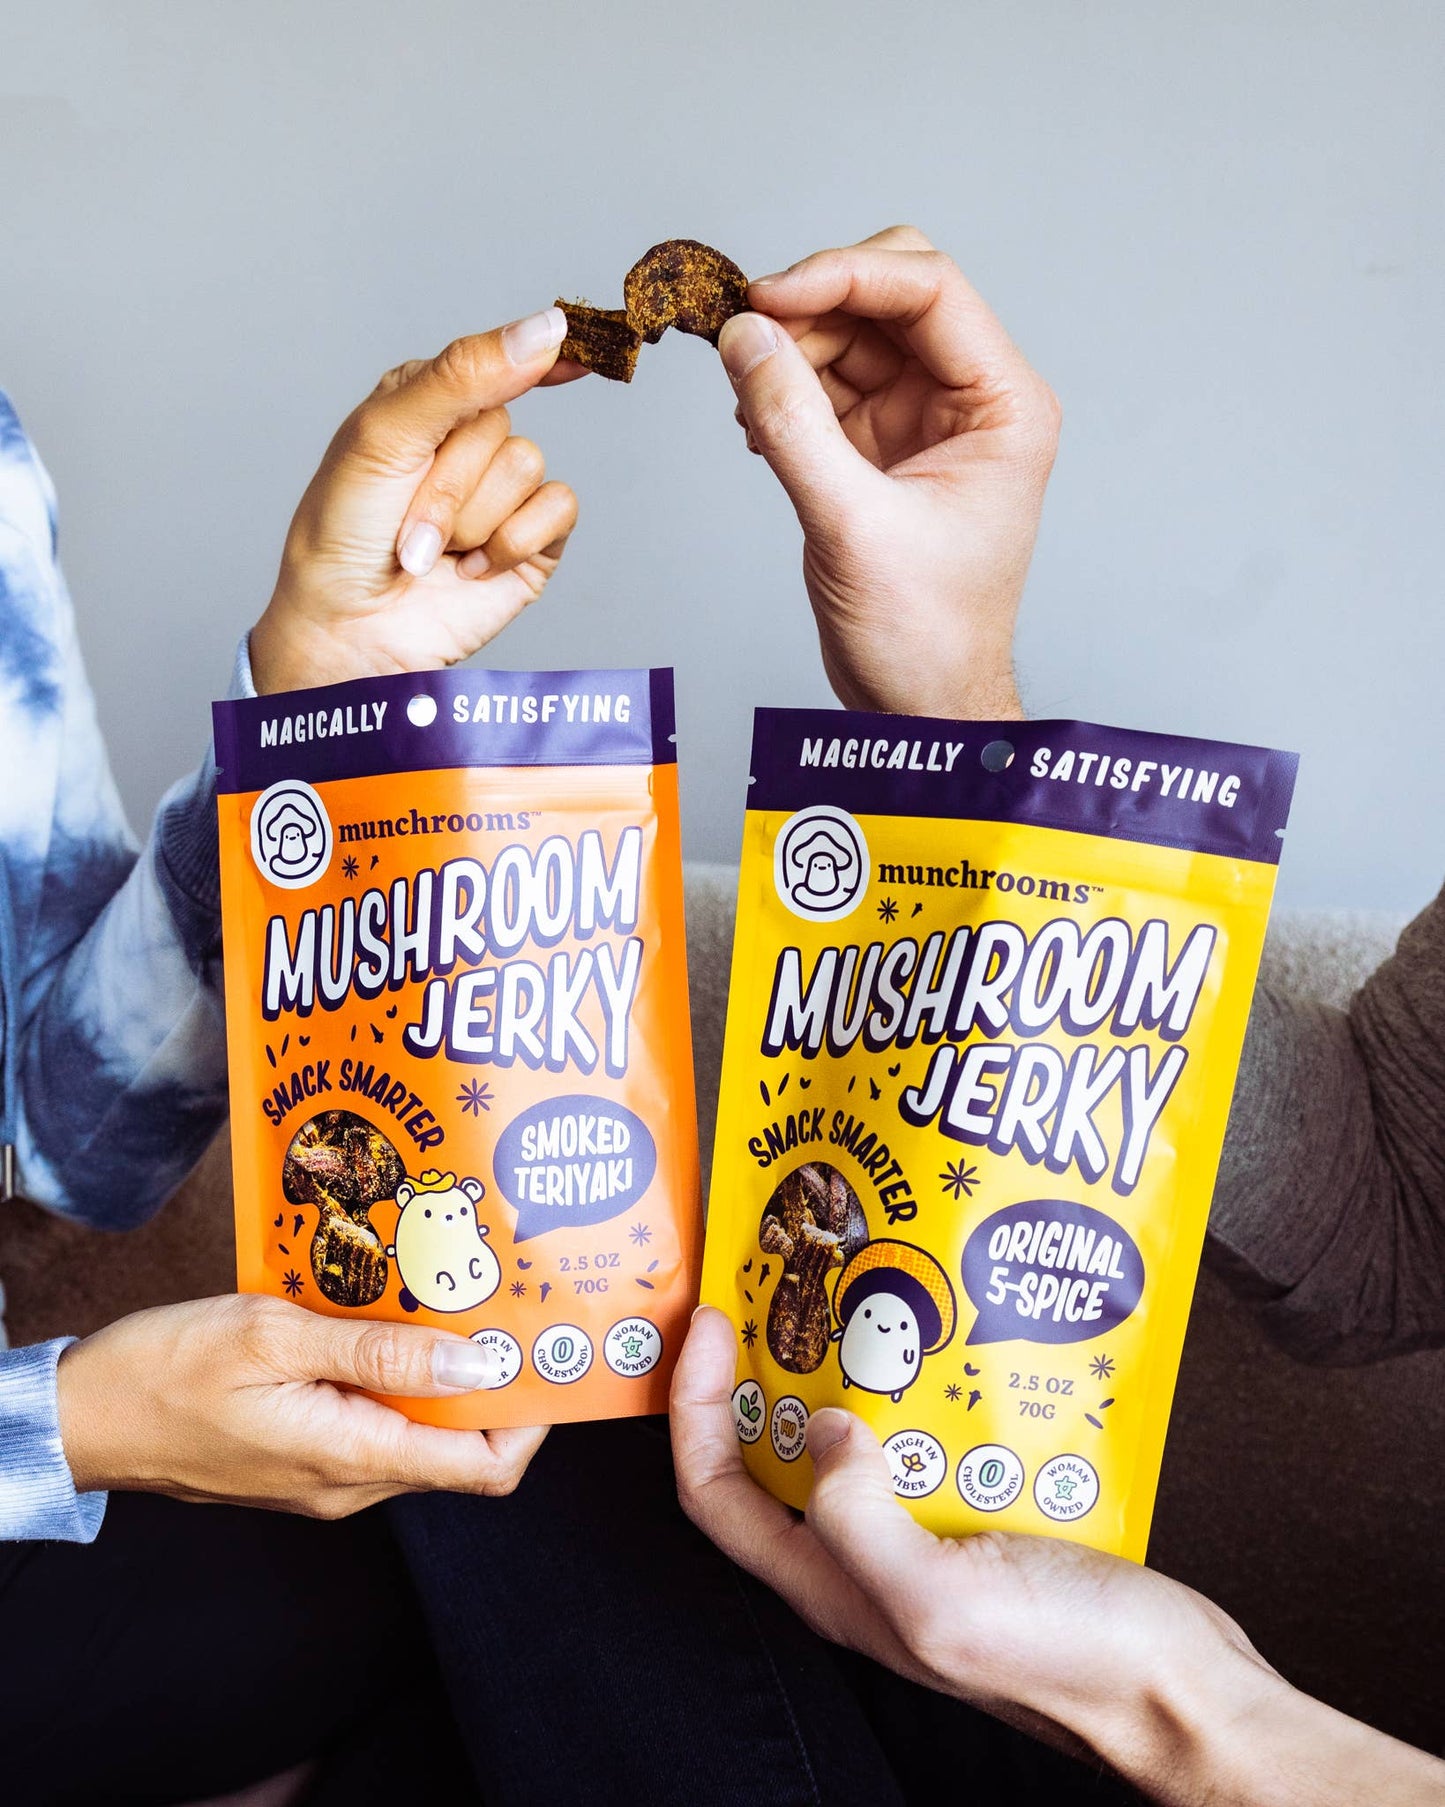 Smoked Teriyaki Mushroom Jerky by munchrooms